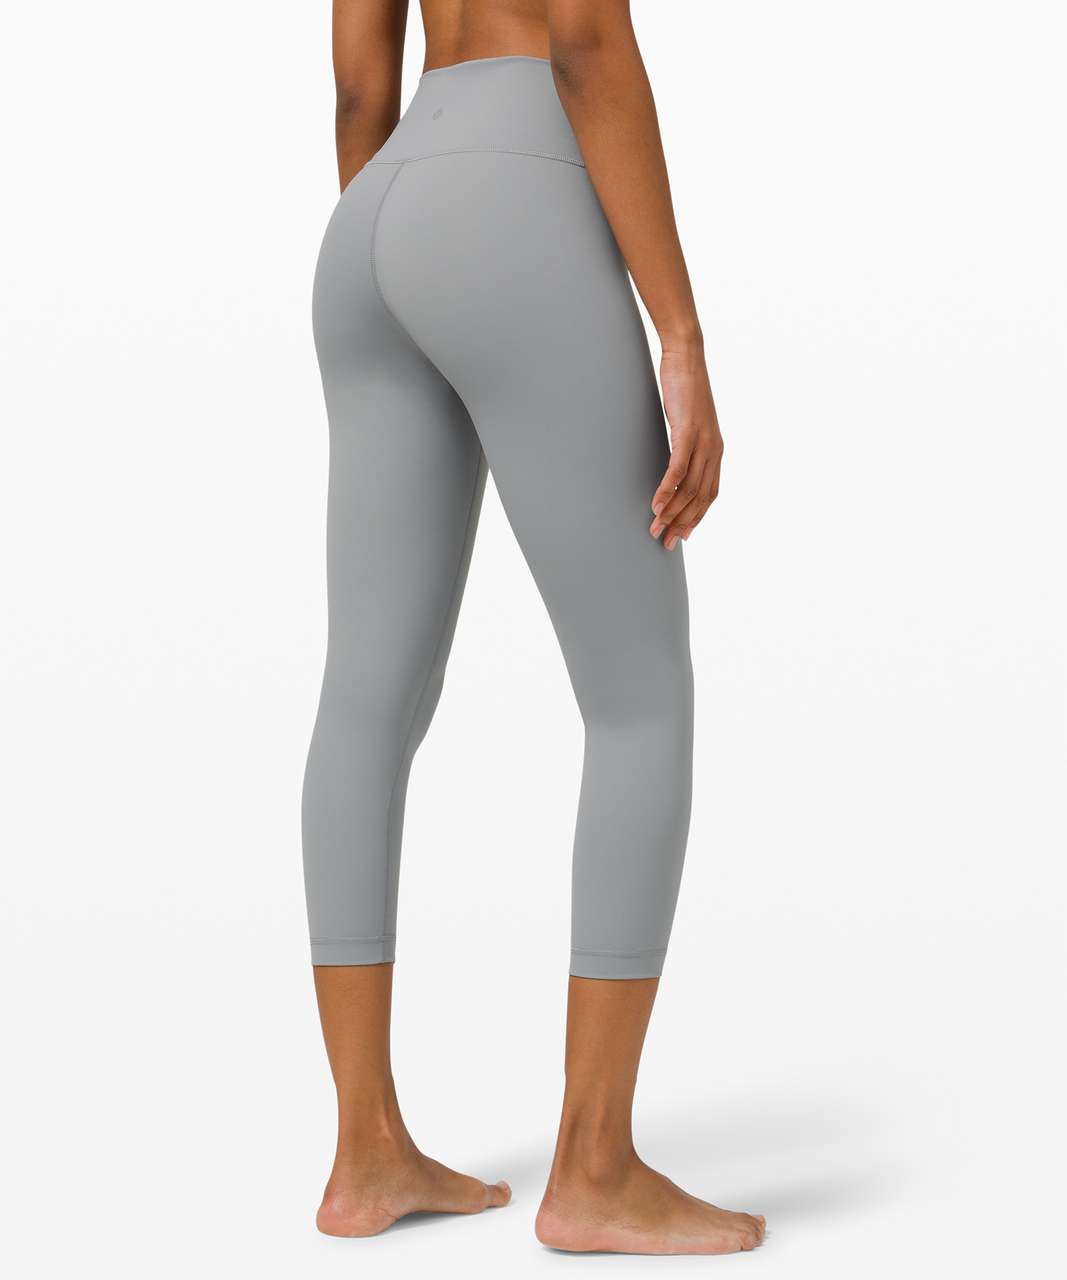 Lululemon Womens Leggings Size 6 Gray Rear Zip Pocket Run Inspire Crop II  for Sale in Shoreline, WA - OfferUp